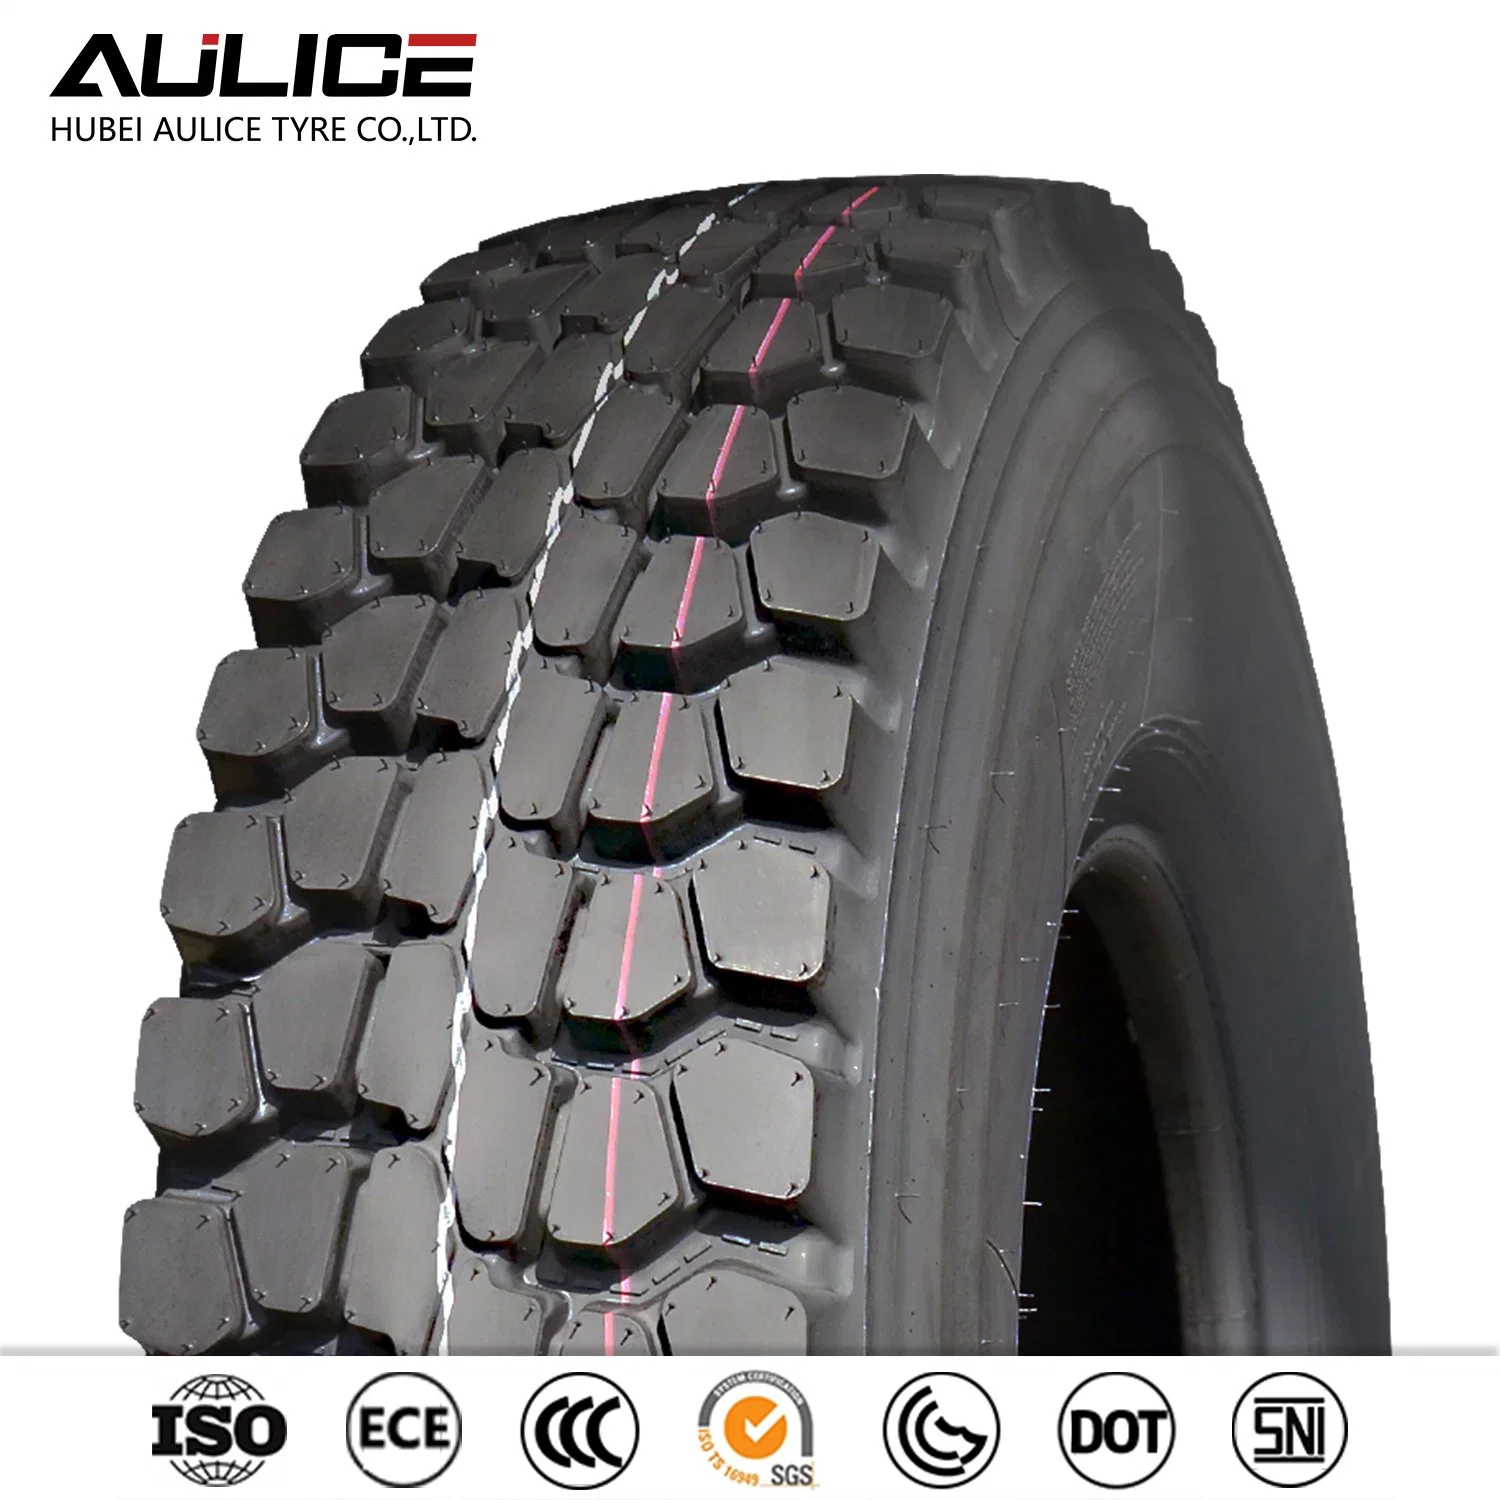 AULICE Brand 10.00R20 neumático de carretera AR3137 para posición de conducción